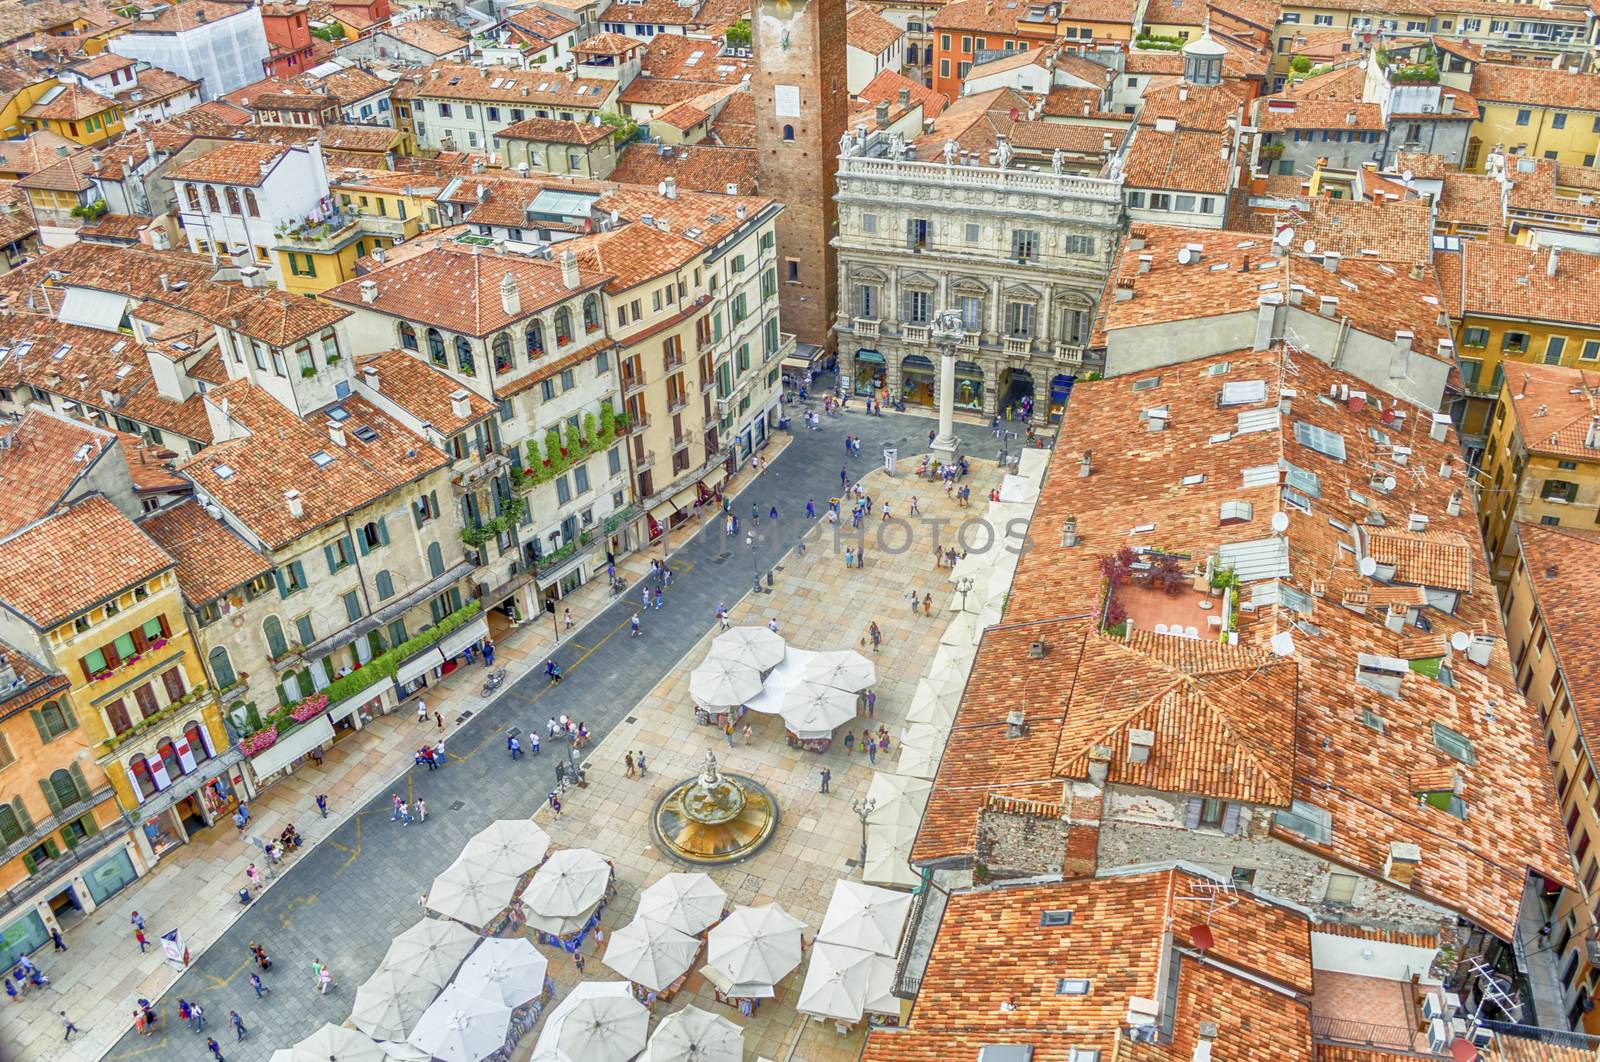 View over Piazza delle Erbe (Market's square), Verona, Italy